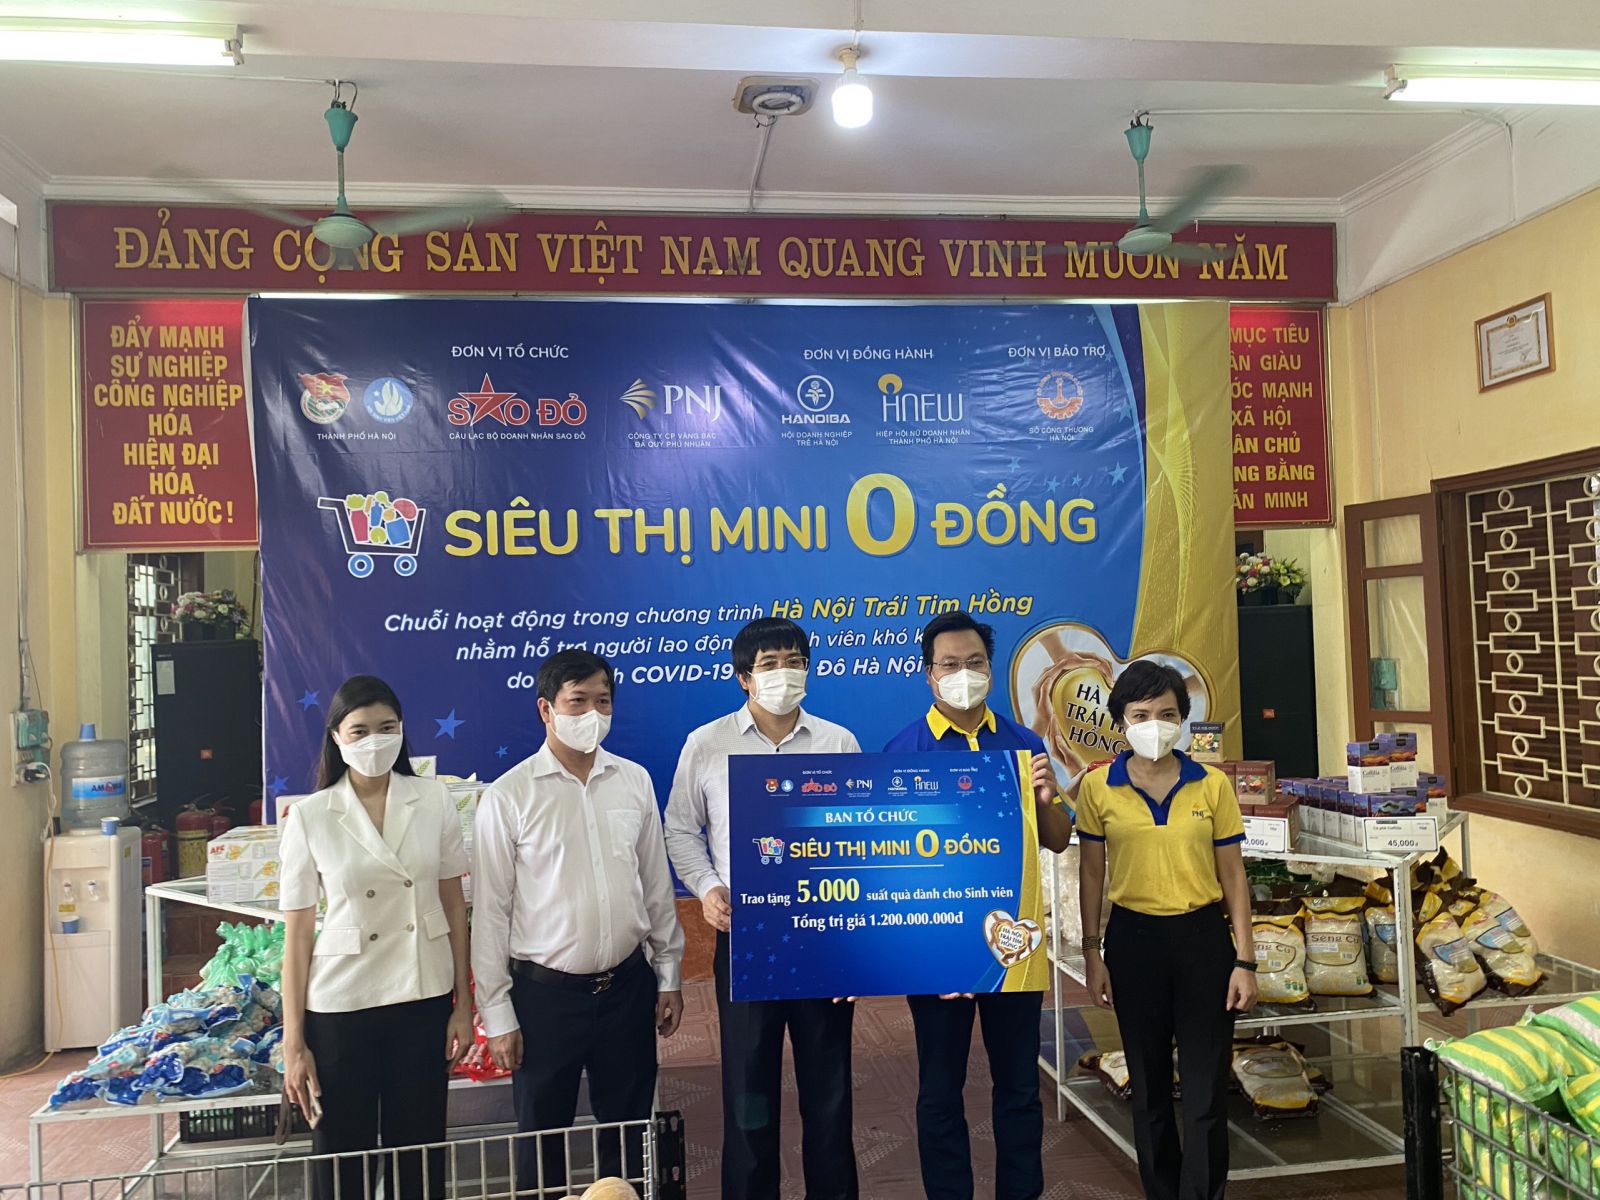 ông Phạm Đình Đoàn, Phó Chủ tịch CLB Doanh nhân Sao Đỏ, đại diện Ban tổ chức trao 5.000 phần quà cho sinh viên